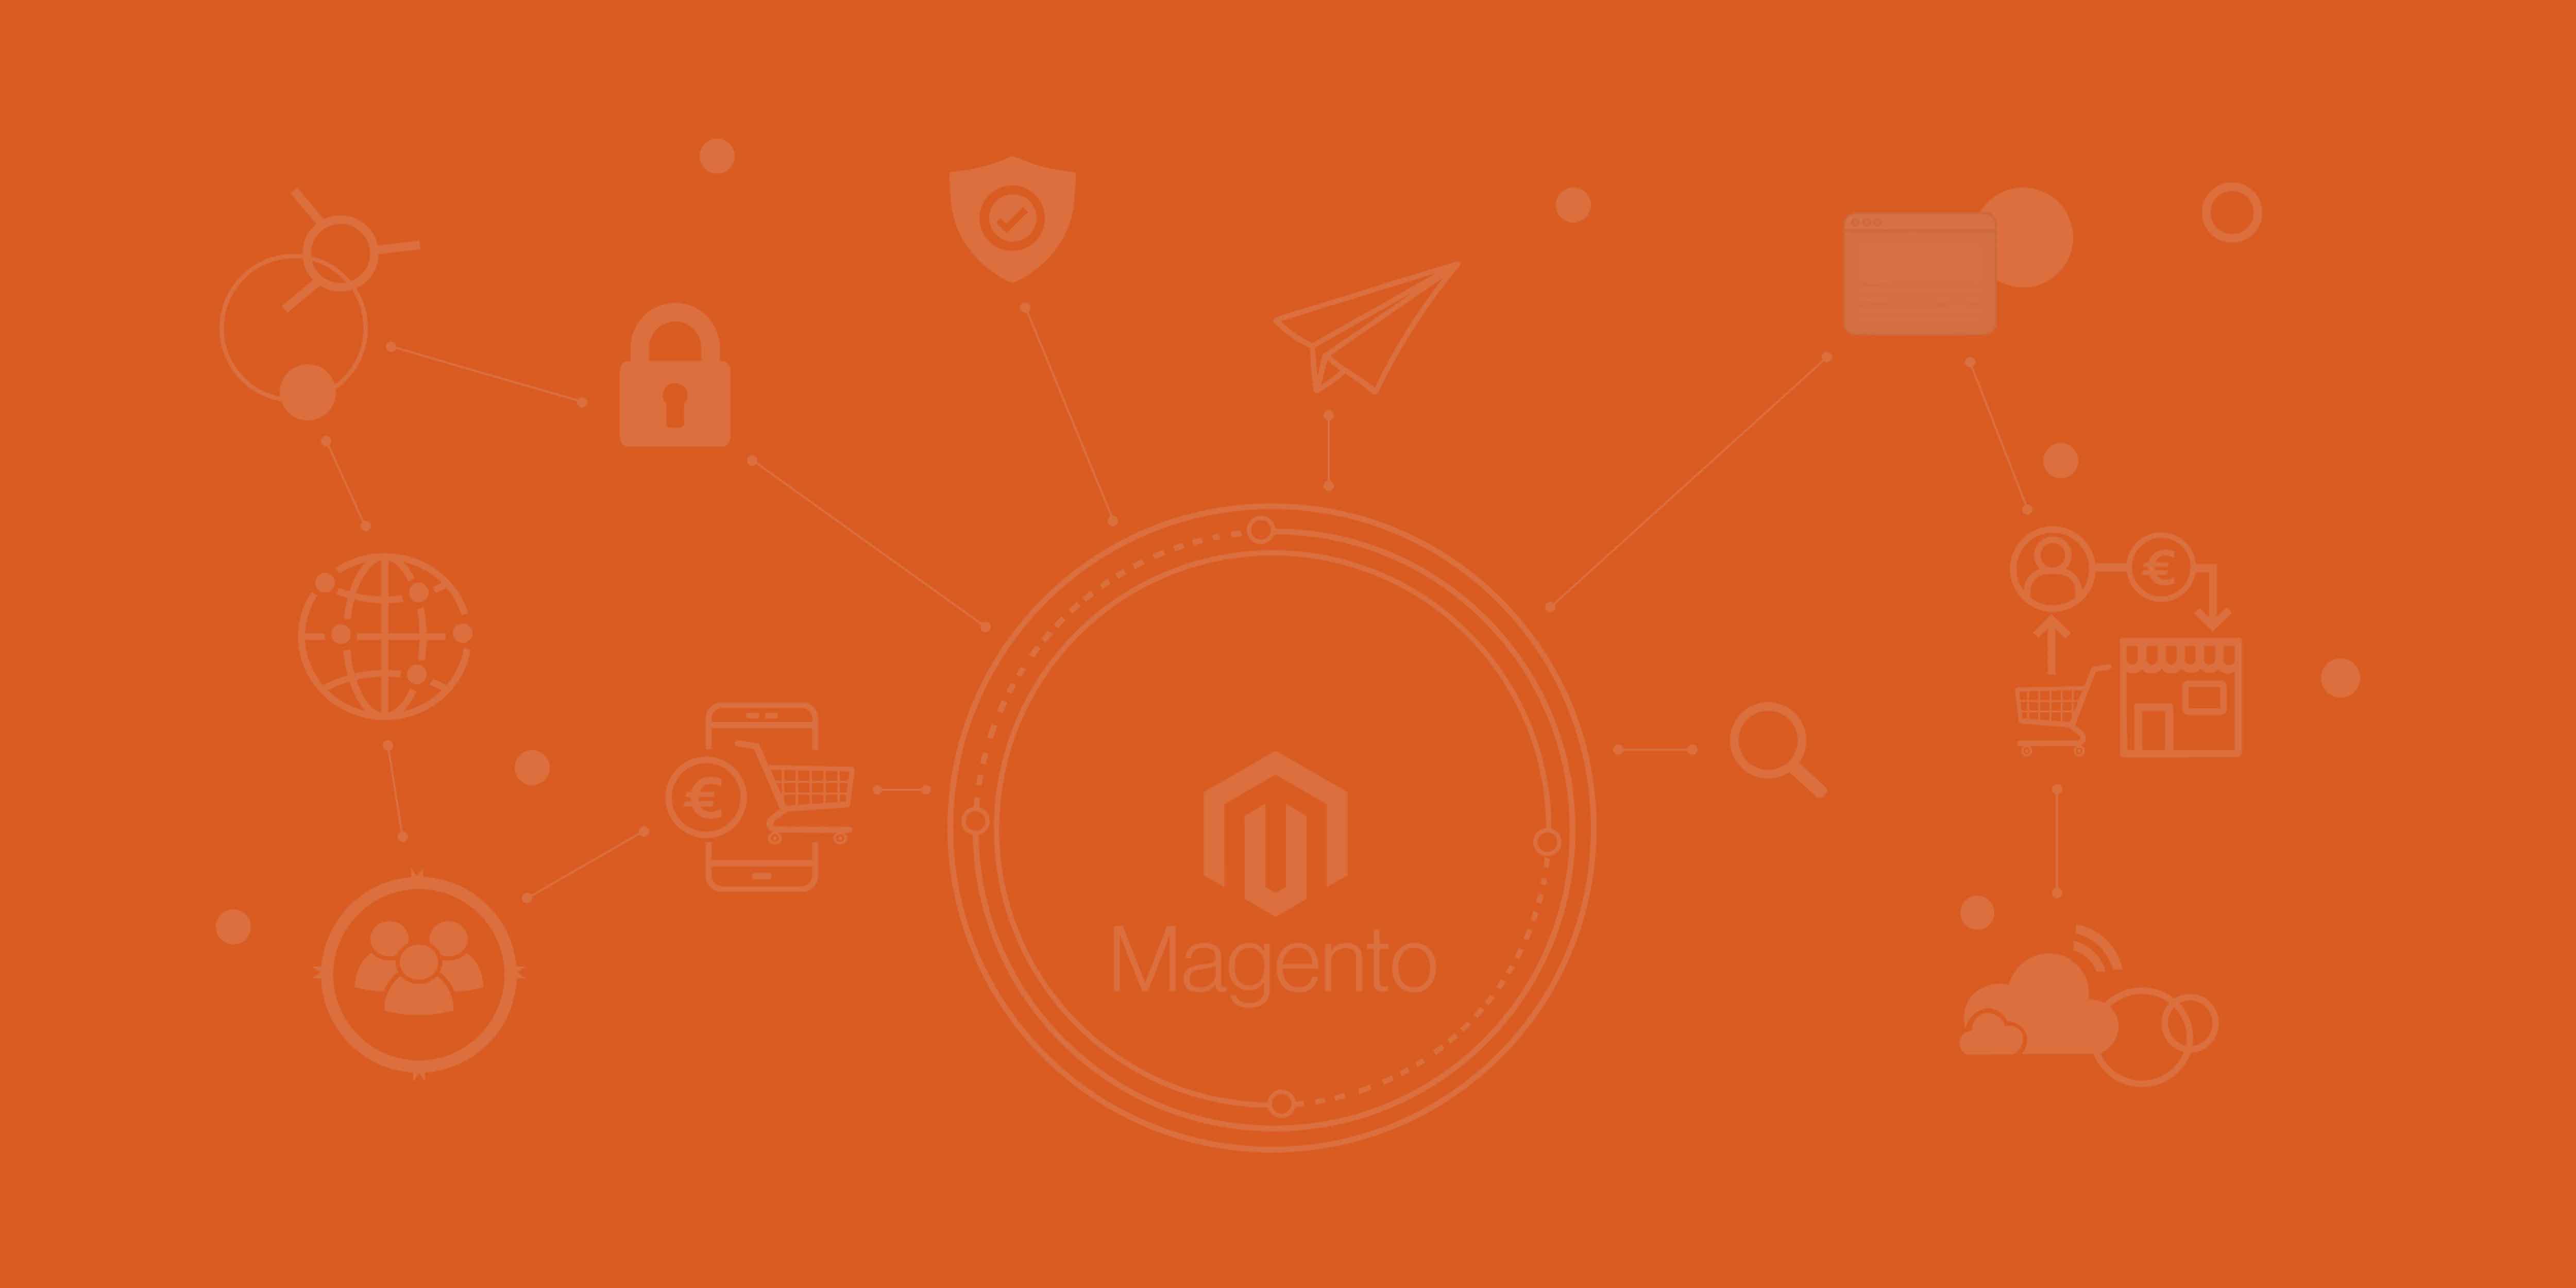 Das Logo von Magento und die Angebotenen Dienstleistungen der Magento Agentur in Form von Icons